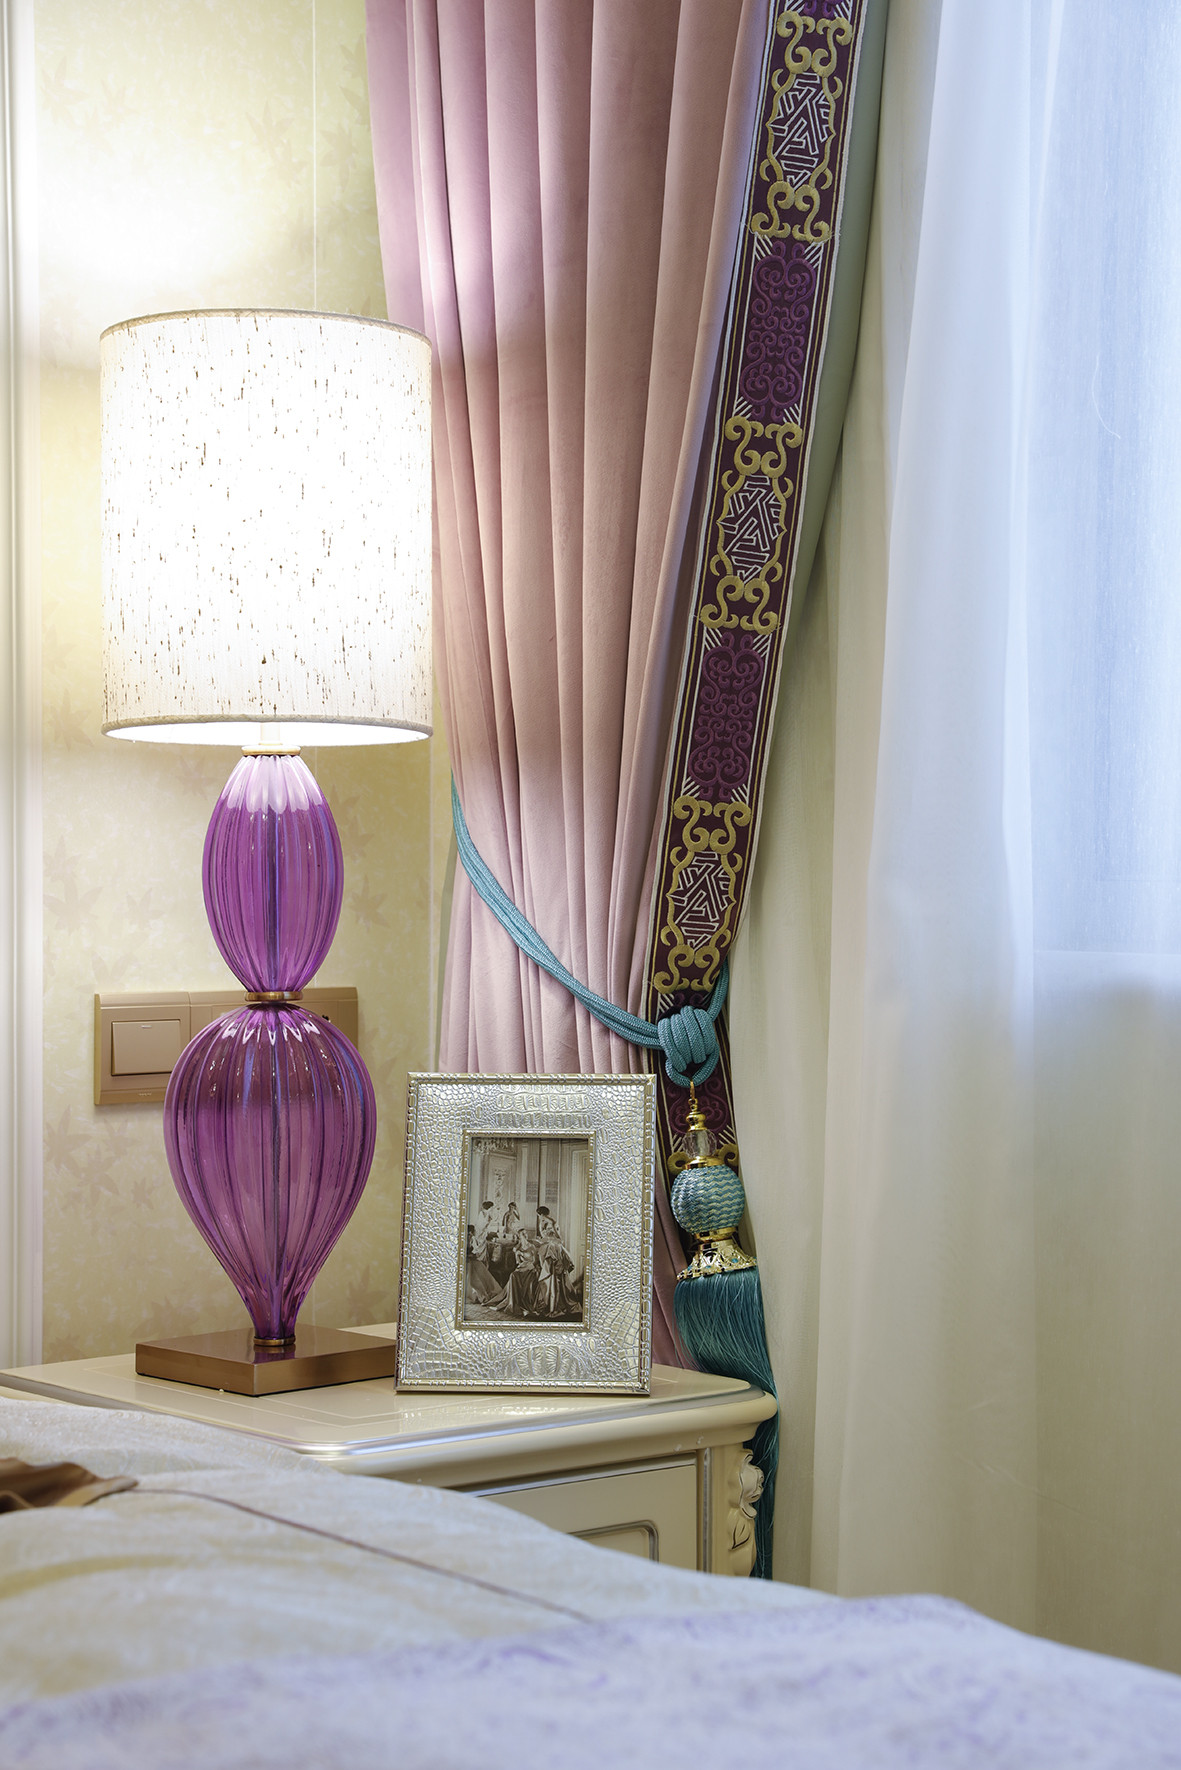 复式装修,豪华型装修,140平米以上装修,卧室,法式风格,窗帘,灯具,紫色